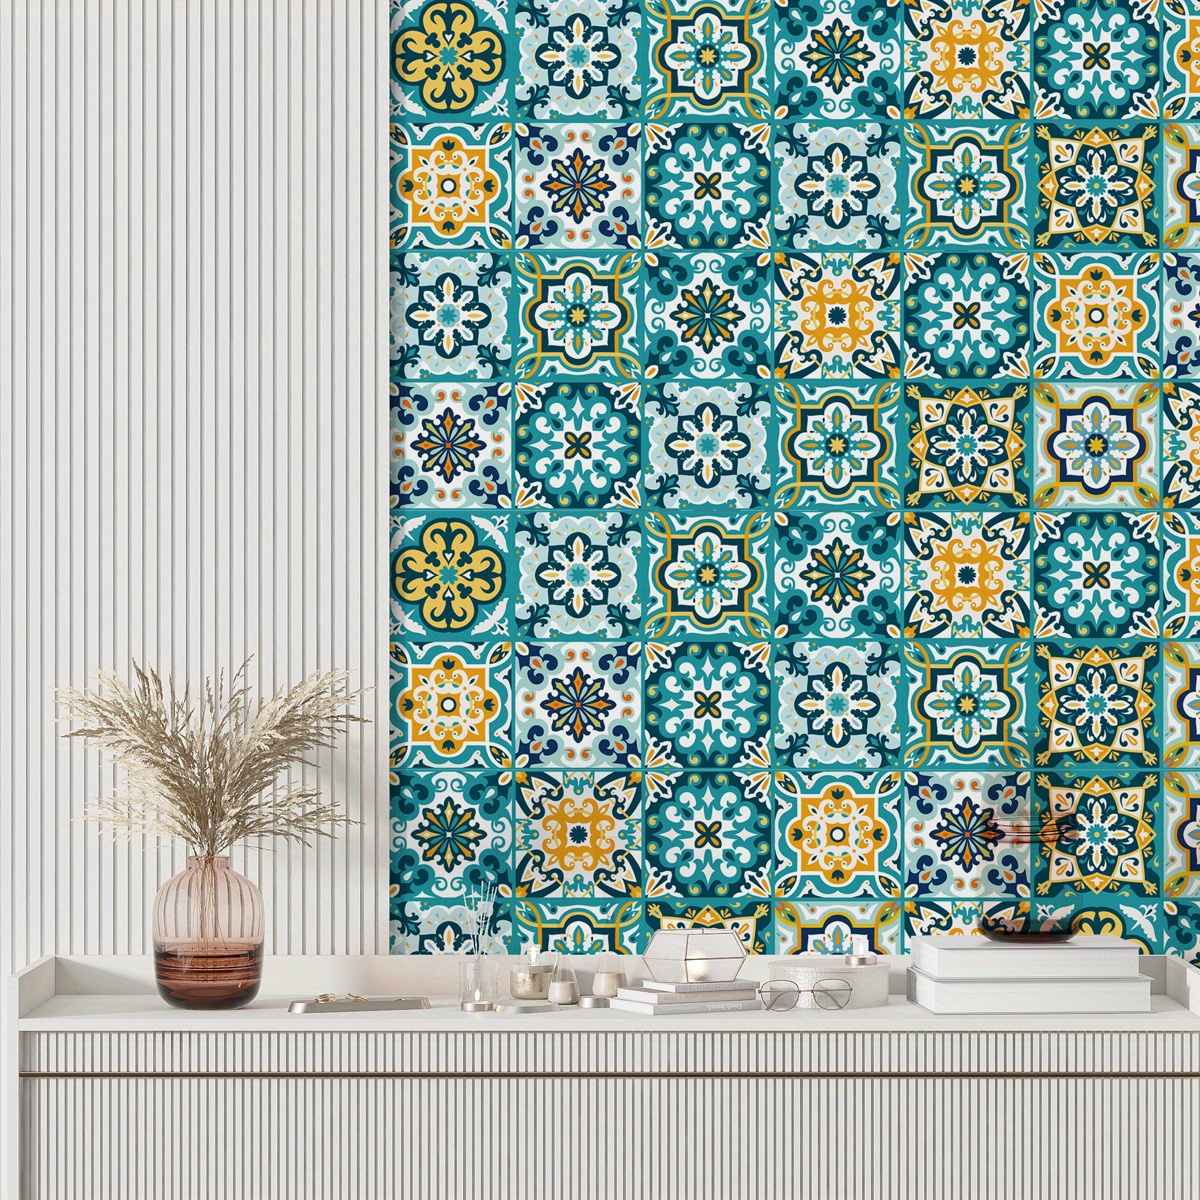  24 pegatinas autoadhesivas para azulejos de mosaico floral para  decoración de la pared del hogar, pegatinas impermeables para muebles de  cocina 6.0 x 6.0 in : Todo lo demás